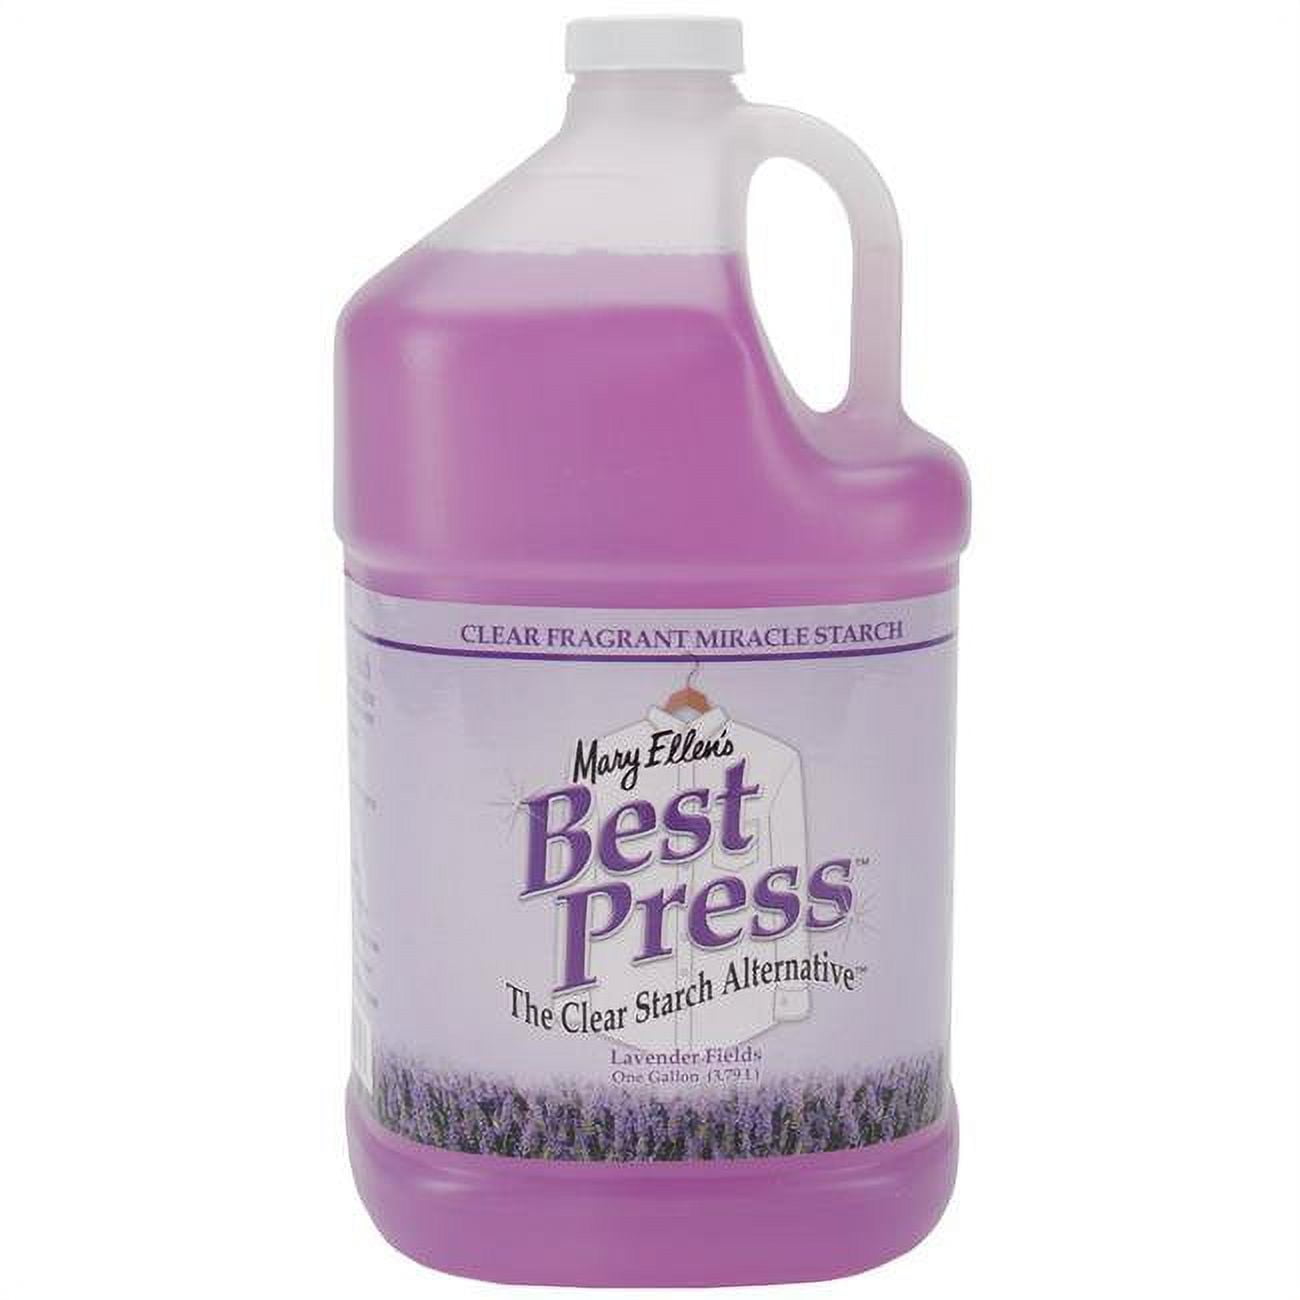 Best Press Spray Starch Lavender Vanilla 16oz - 035234600740